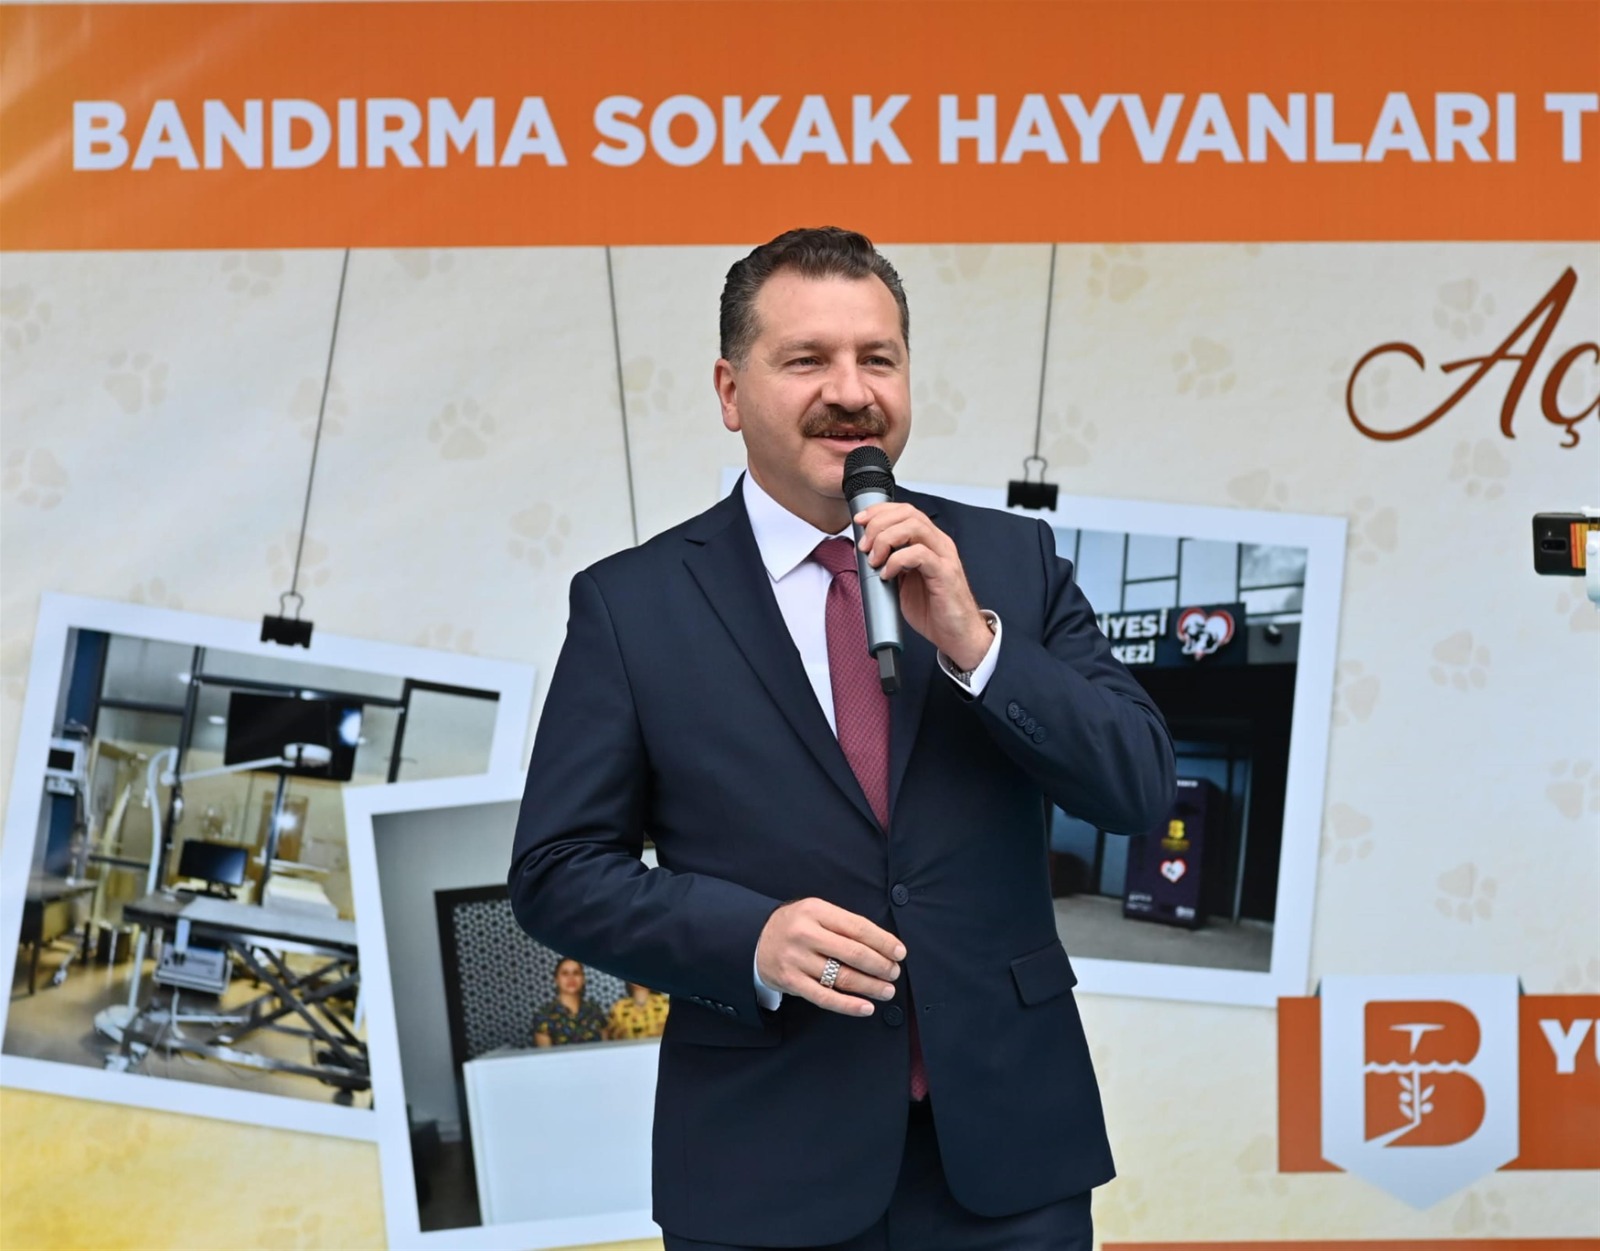 Bugün Açıldı! Türkiye’ye Örnek “Bandırma Sokak Hayvanları Tedavi Merkezi”